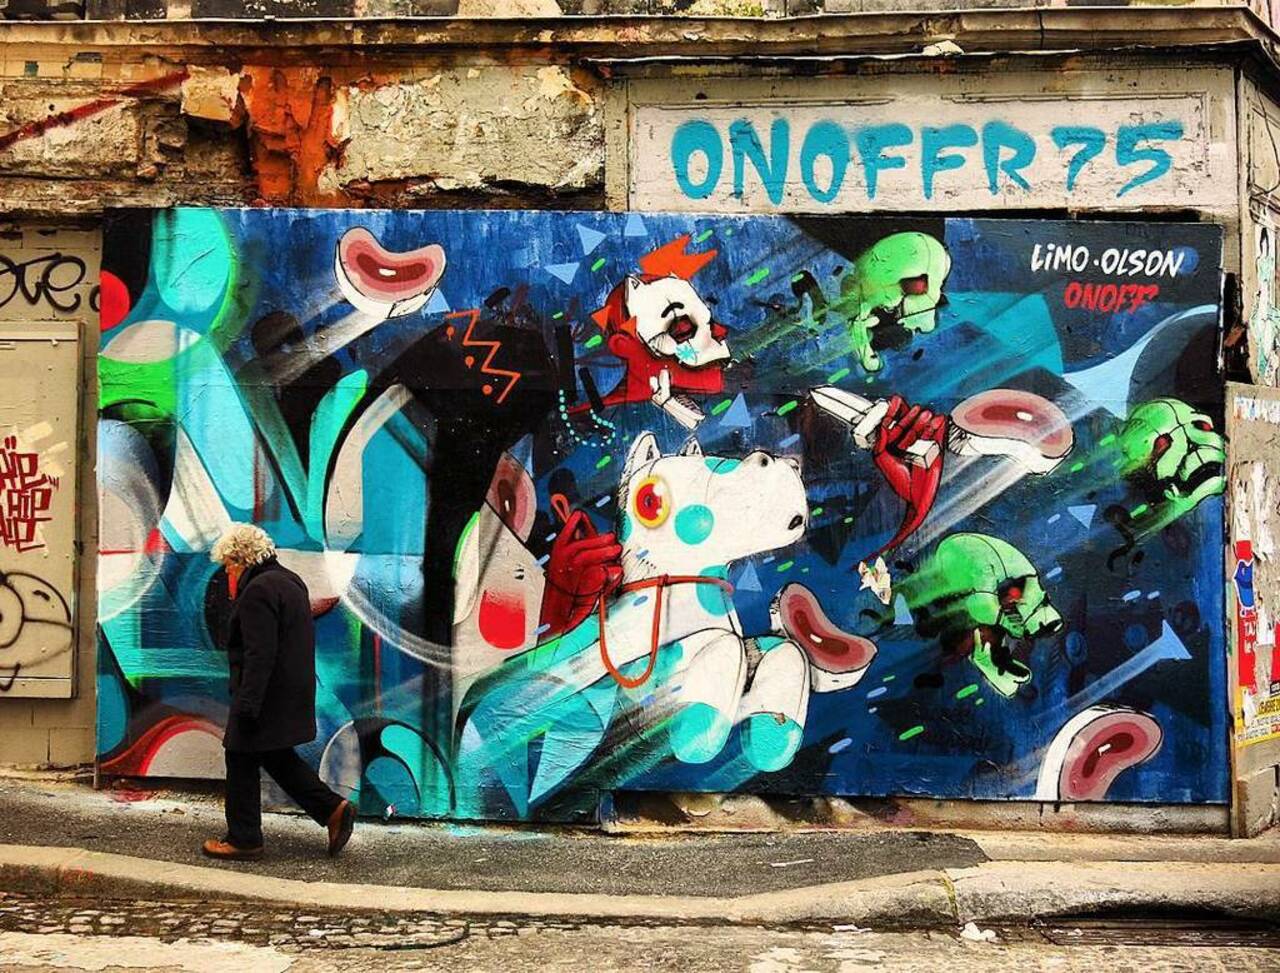 #streetart #streetartparis #urbanart #urban #paris #graffiti #onoffr75 by omerlin https://t.co/HmqWabbd3J https://goo.gl/t4fpx2